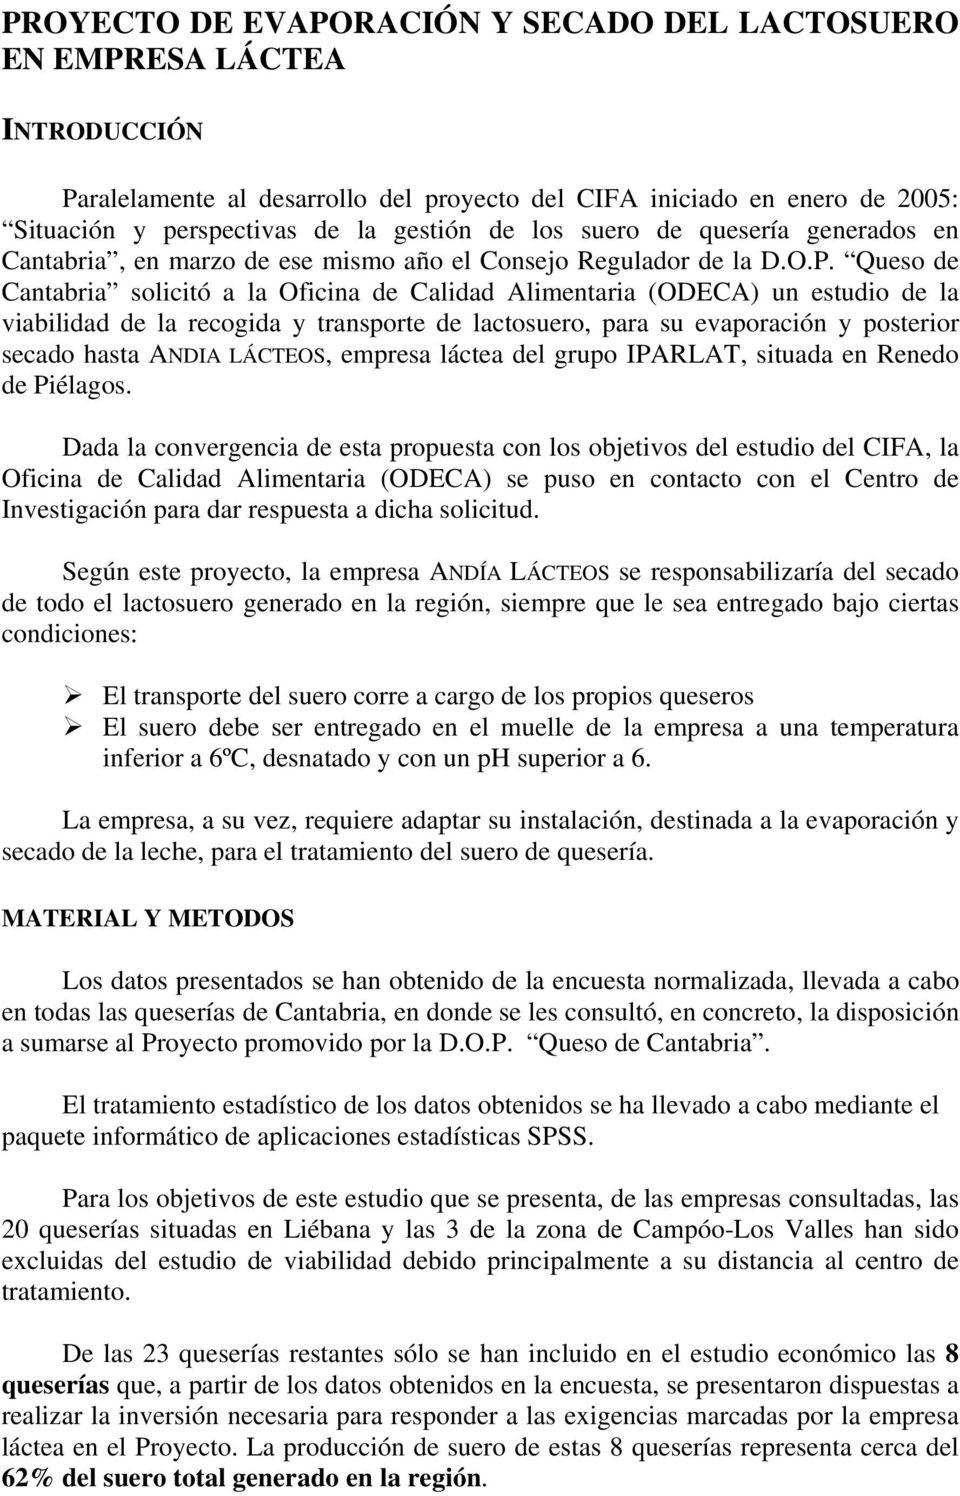 Queso de Cantabria solicitó a la Oficina de Calidad Alimentaria (ODECA) un estudio de la viabilidad de la recogida y transporte de lactosuero, para su evaporación y posterior secado hasta ANDIA